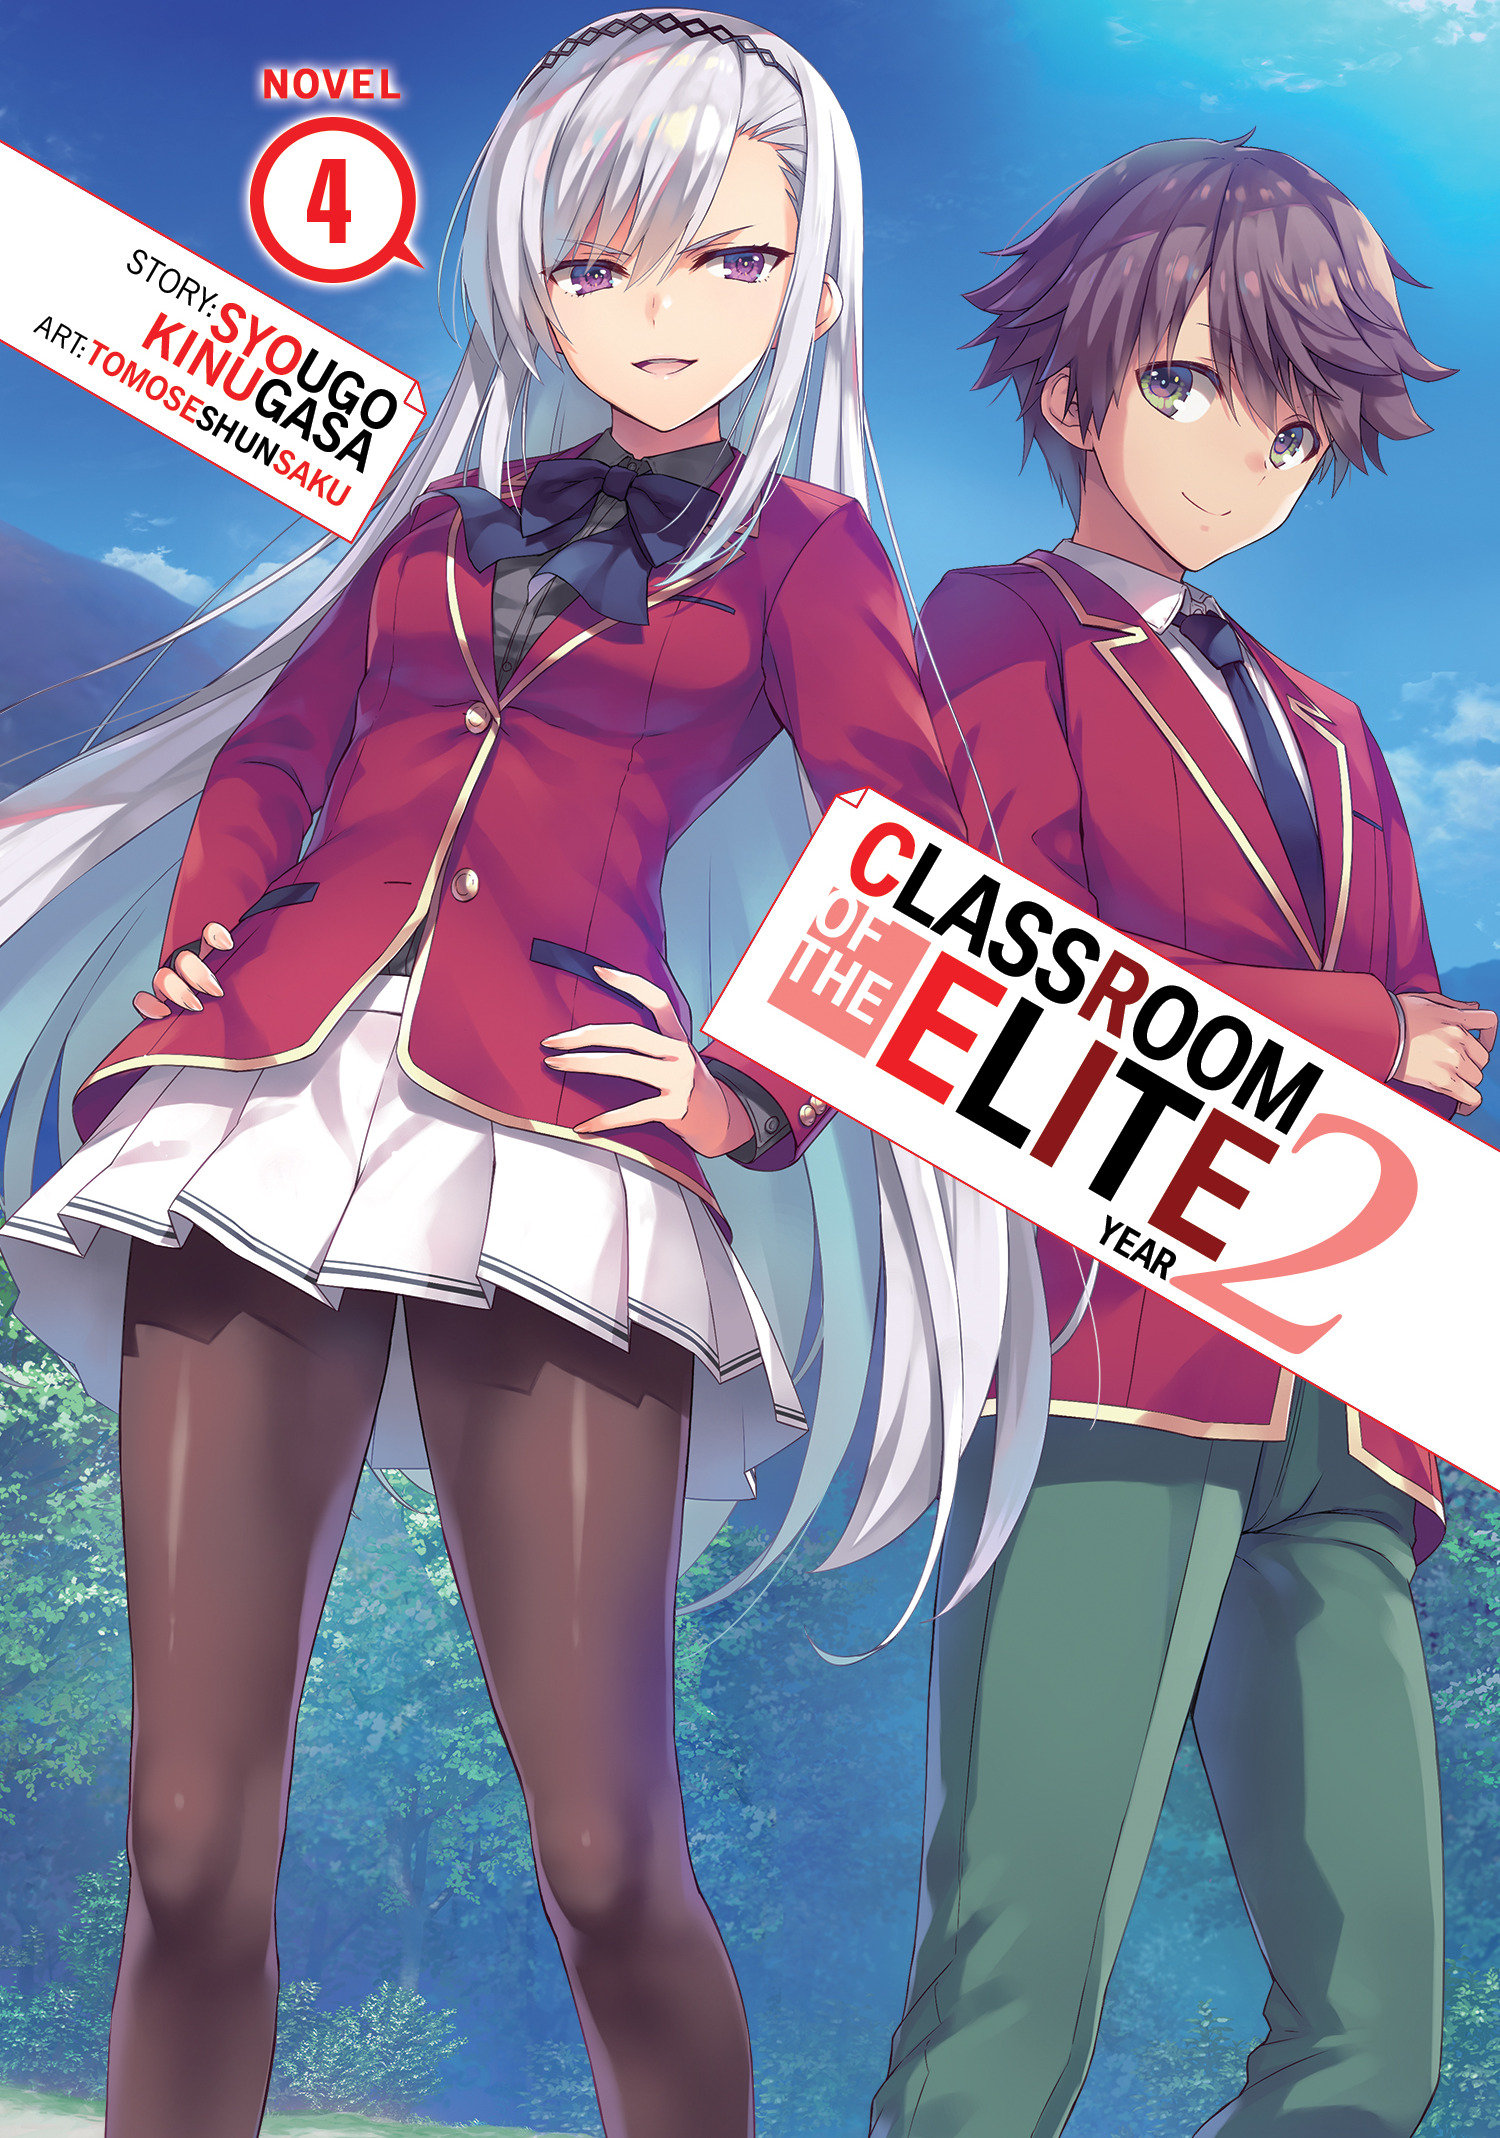 Classroom of the Elite: Year 2 Light Novel Volume 2 Light Novel Volume 4